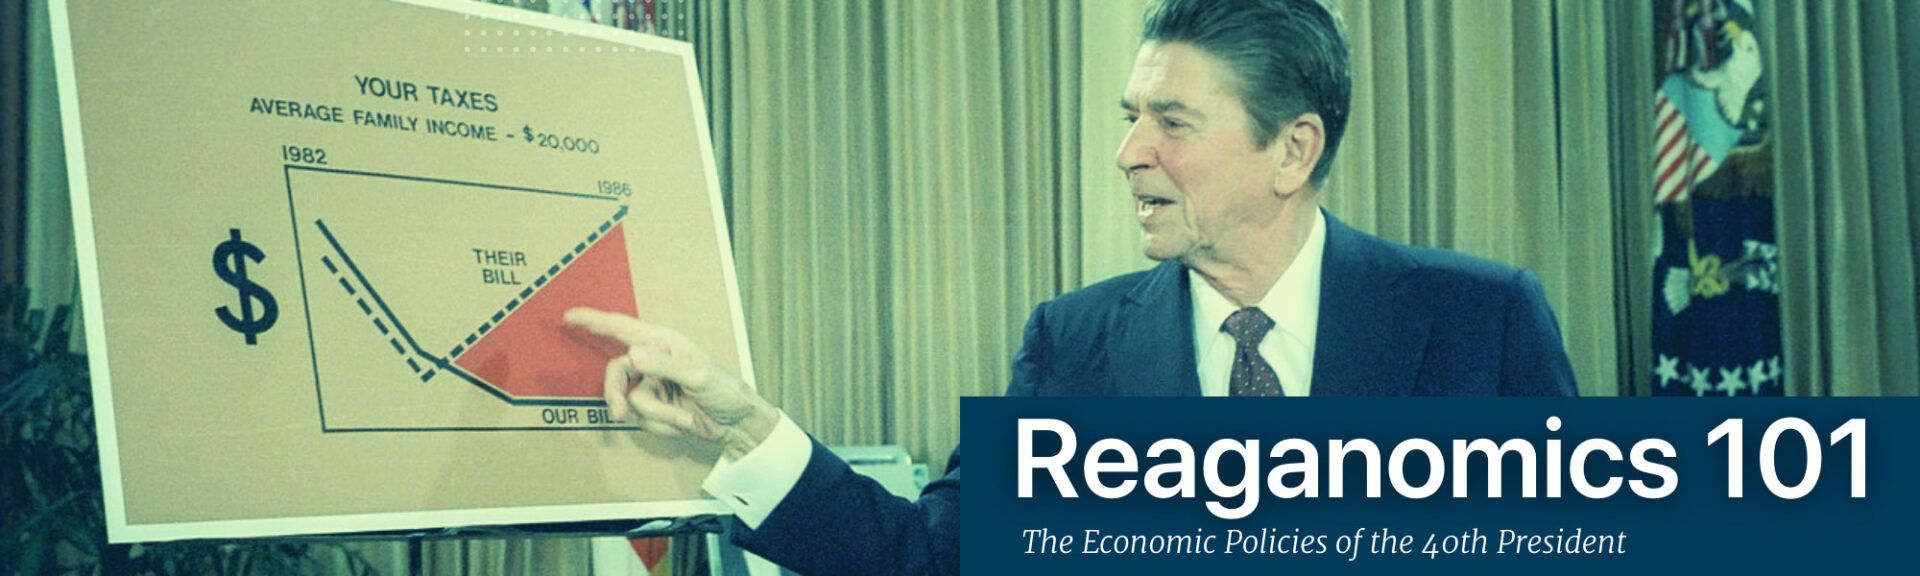 Reaganomics - Tricledown - Presiden Reagan